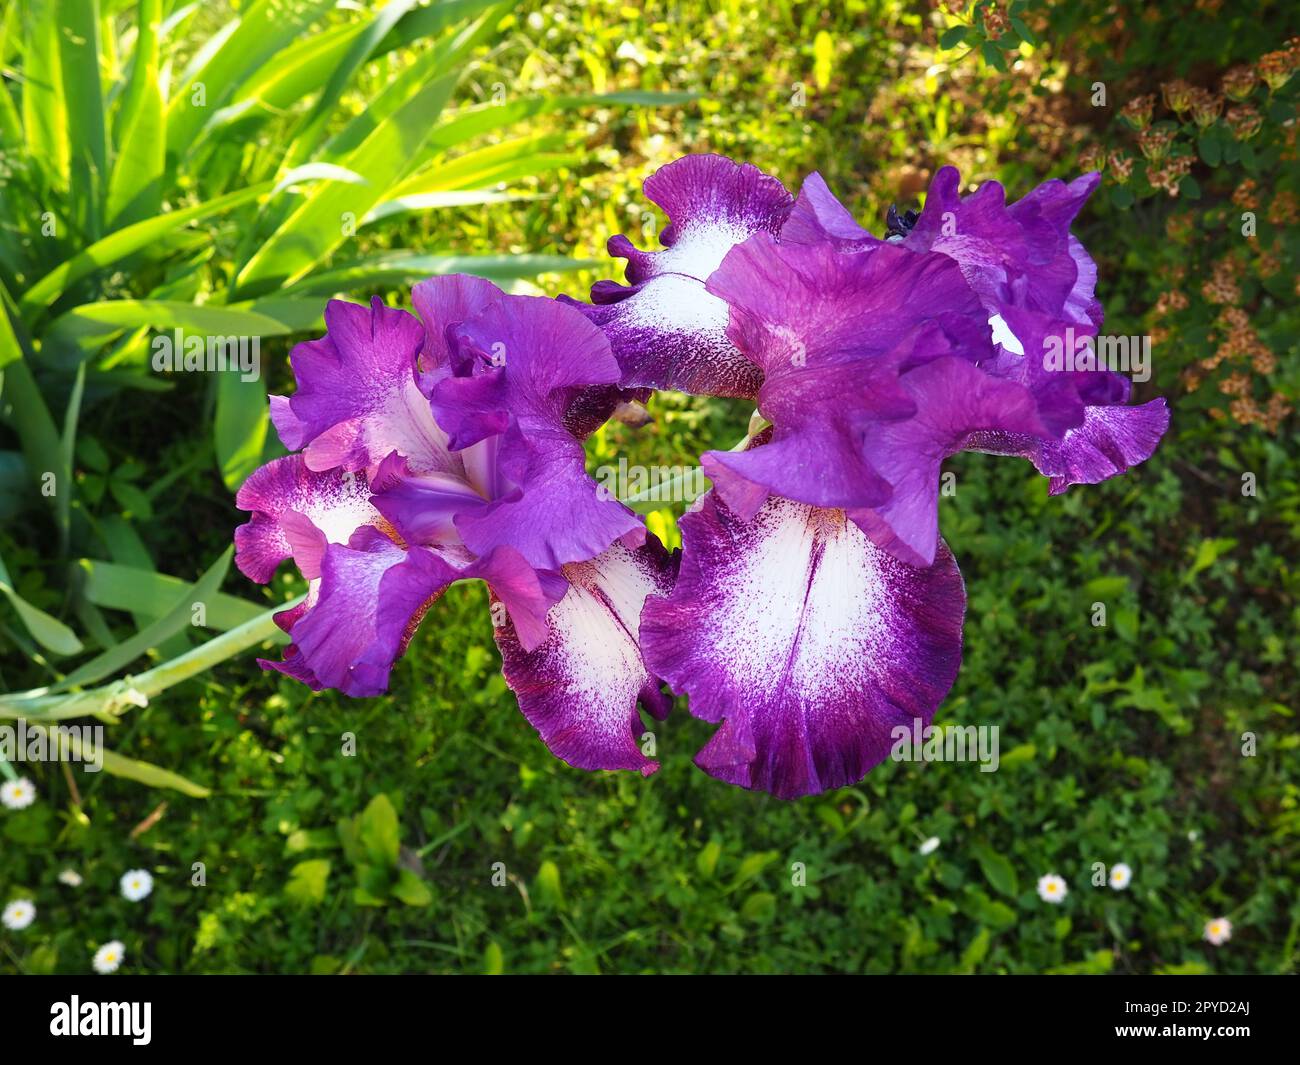 Primi piani con splendidi fiori di Iris colorati. Fiori di viola in estate. Due bellissimi fiori su uno stelo. Foglie verdi. Botanica, vegetazione, floricoltura e giardinaggio Foto Stock